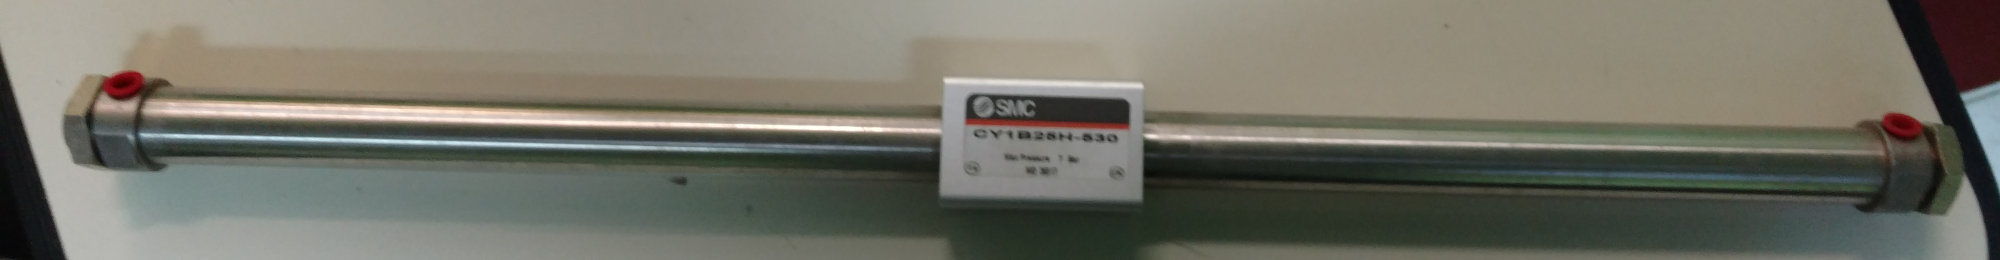 SMC INR-498-012C-X007 